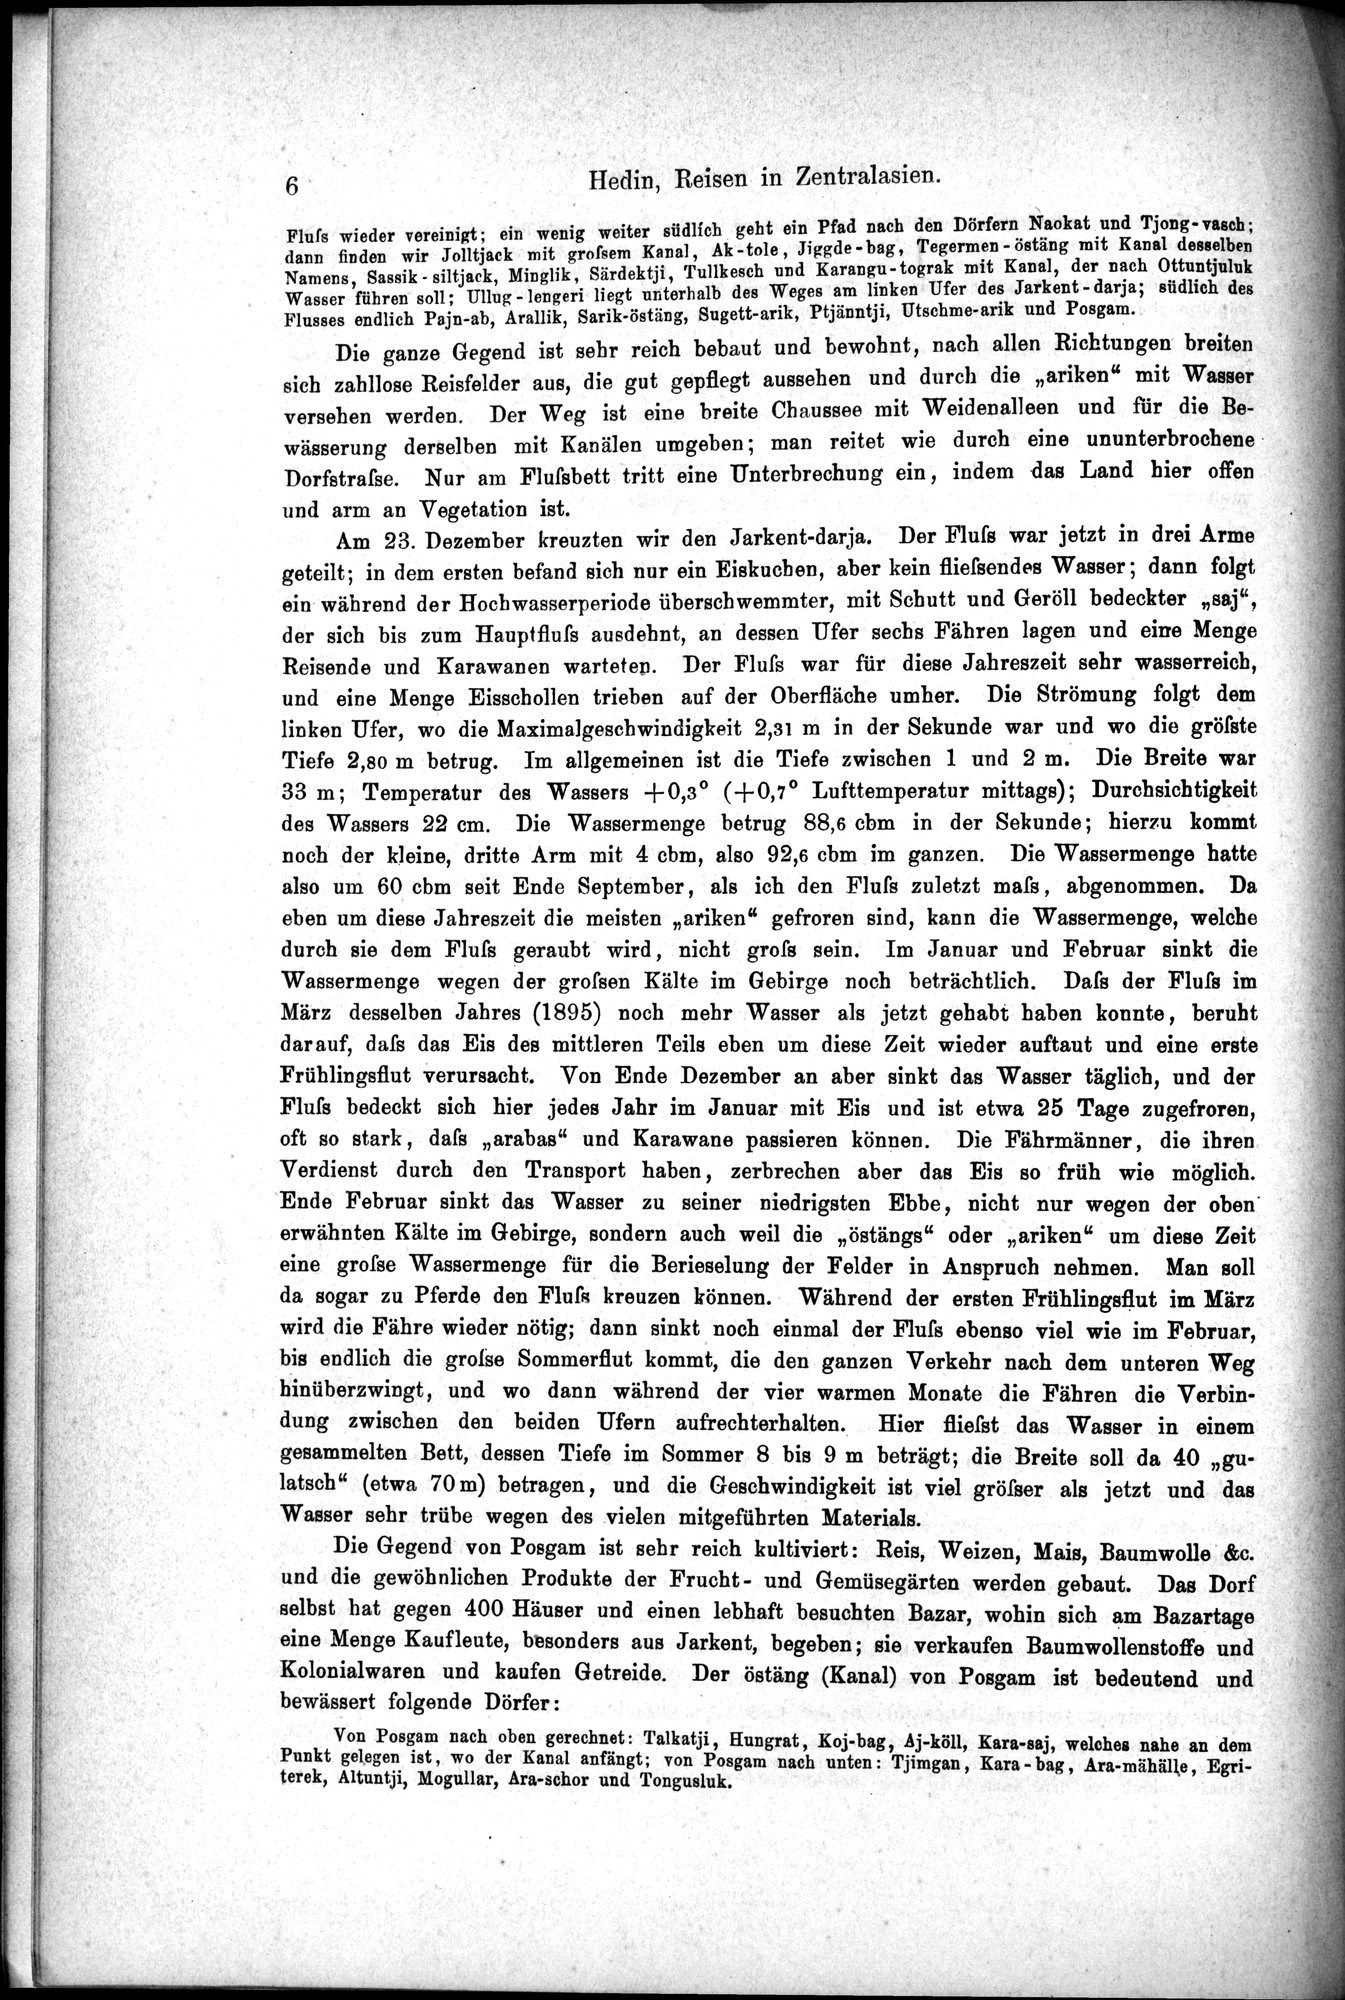 Die Geographische-Wissenschaftlichen Ergebnisse meiner Reisen in Zentralasien, 1894-1897 : vol.1 / Page 18 (Grayscale High Resolution Image)